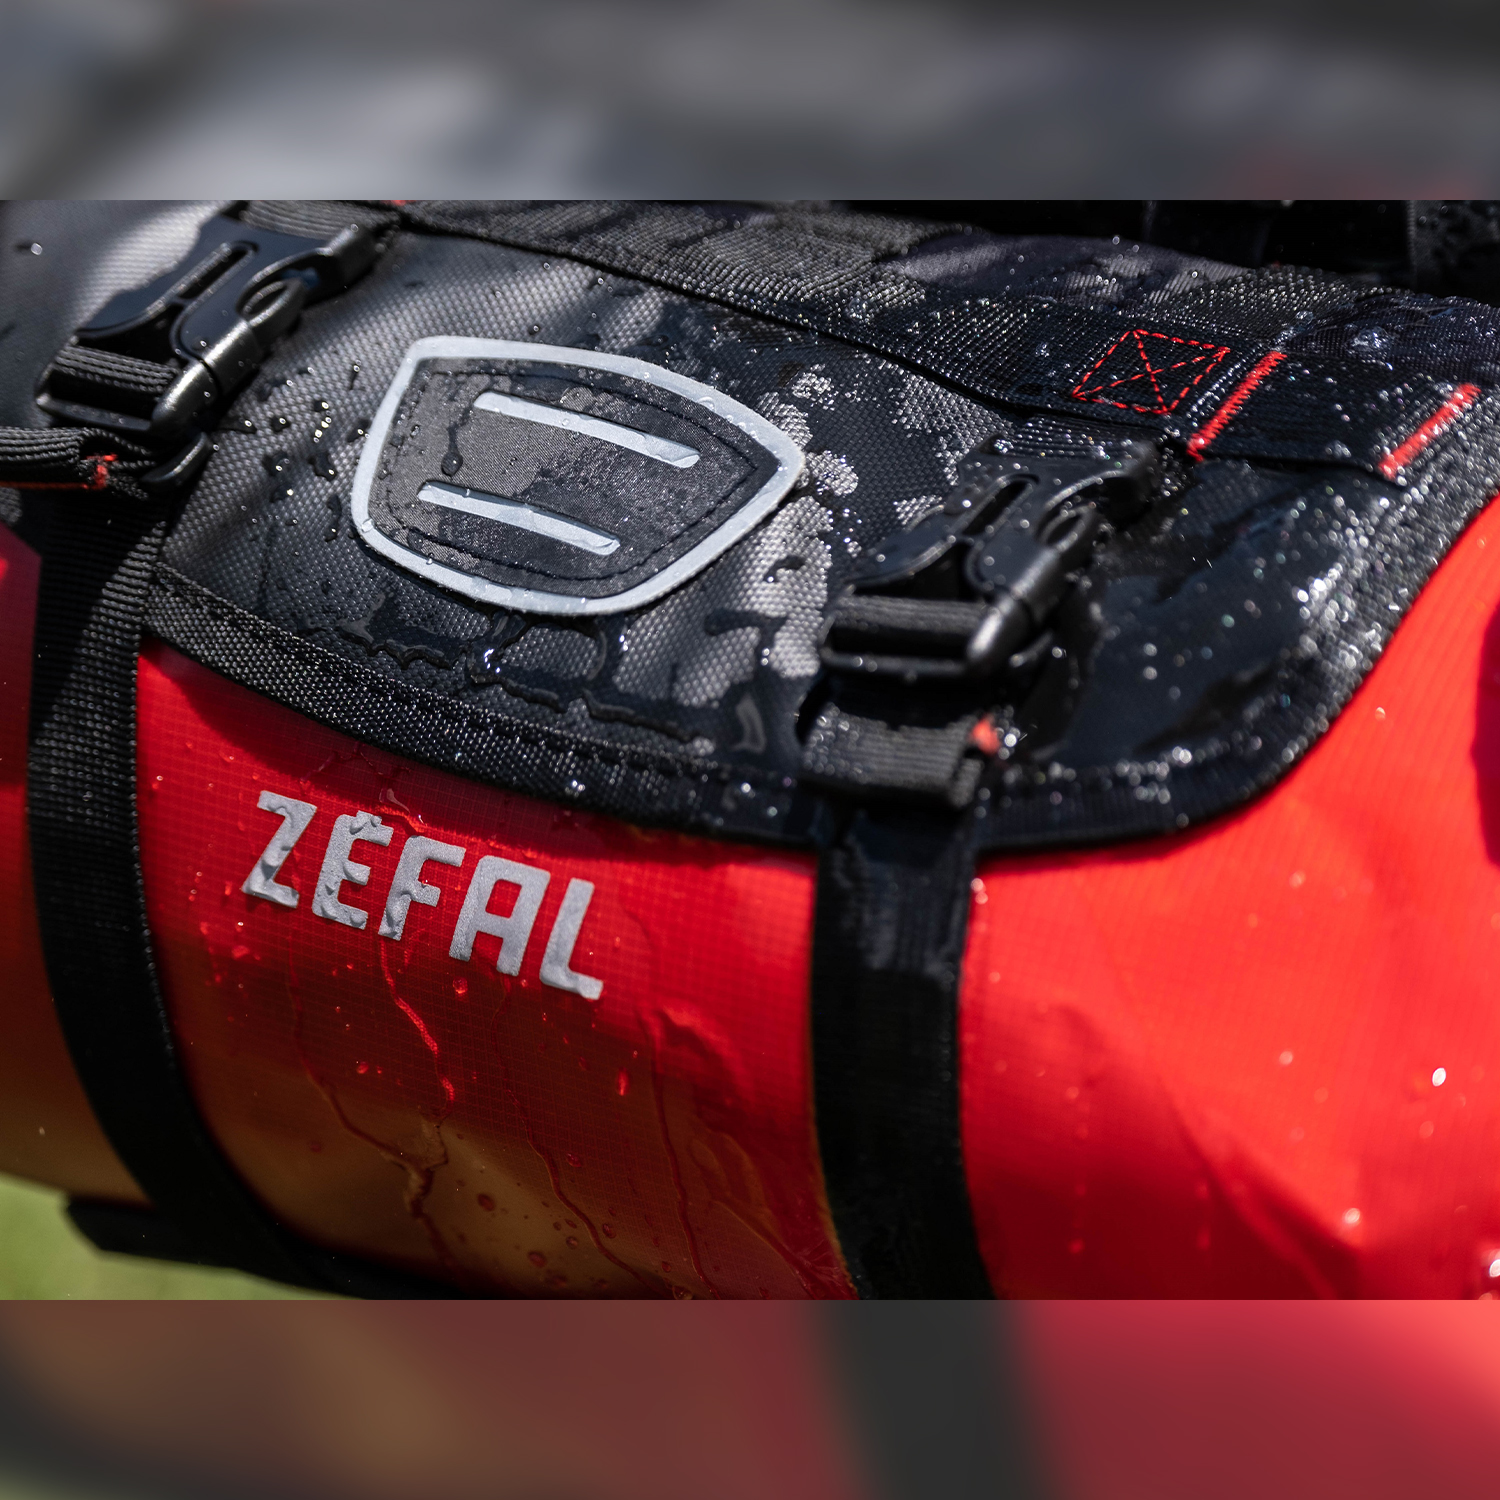 Сумка на руль Zefal Z Adventure F10 Front Bag